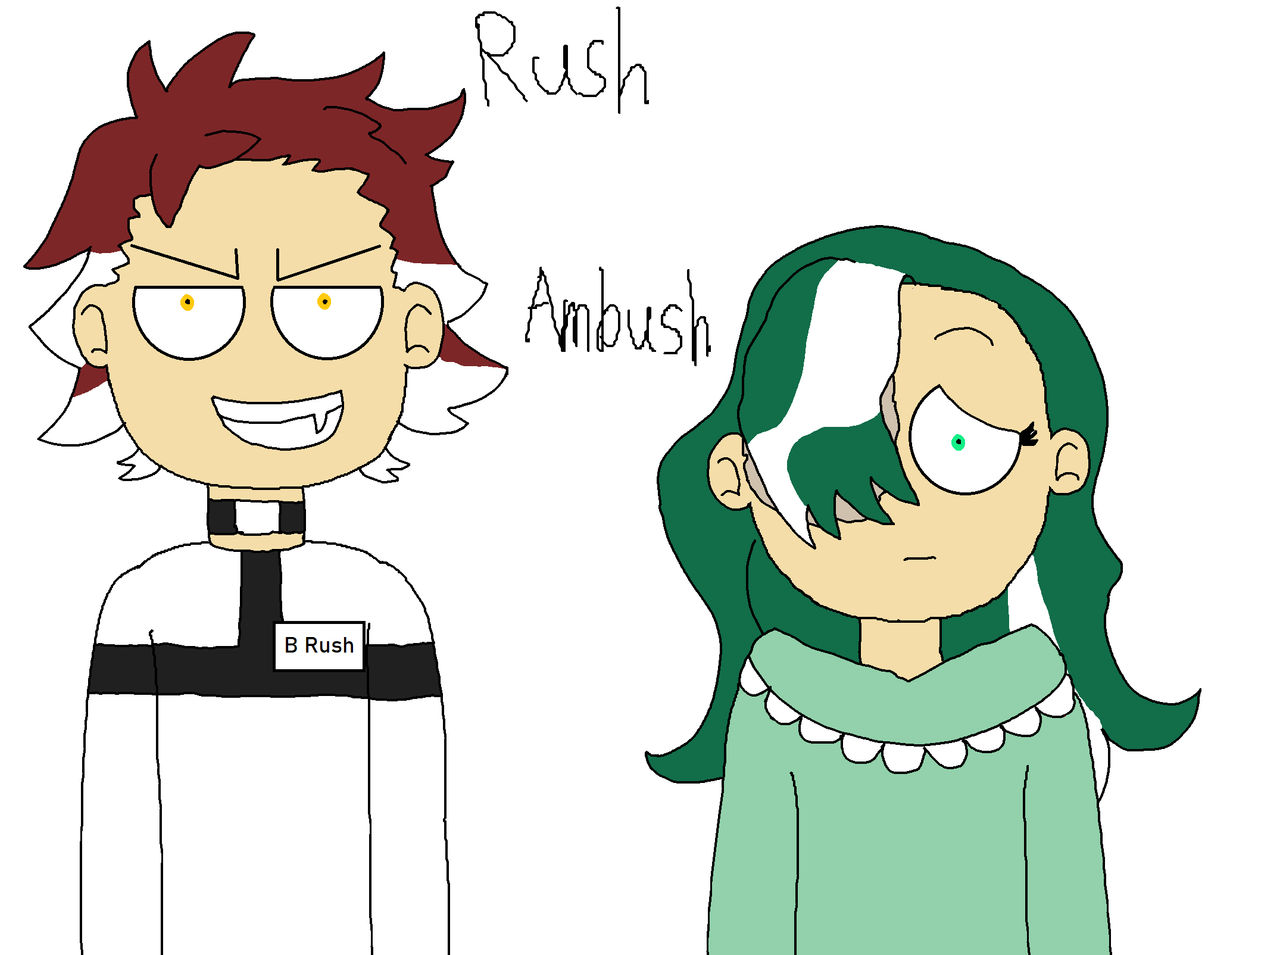 Rush and ambush as drawings and lego